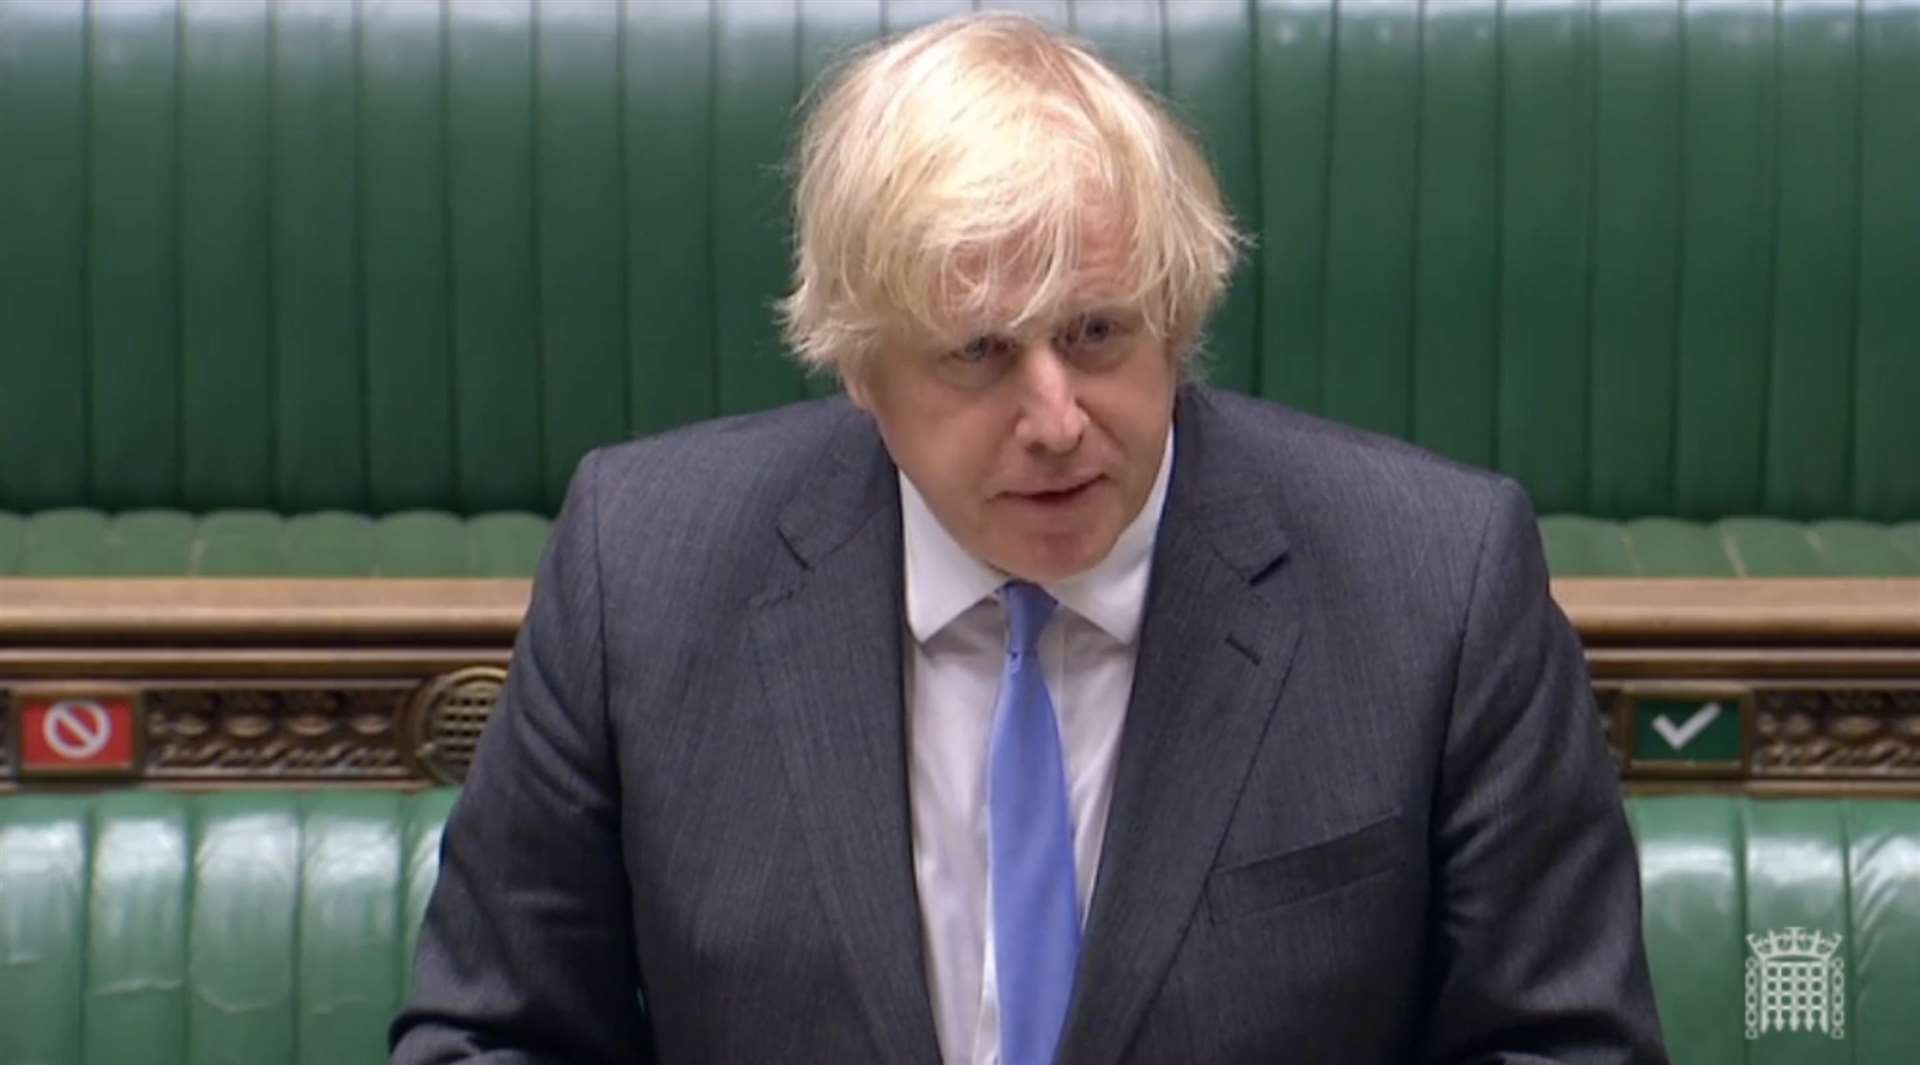 Boris Johnson, the prime minister, addresses the House of Commons on relaxing coronavirus lockdown rules